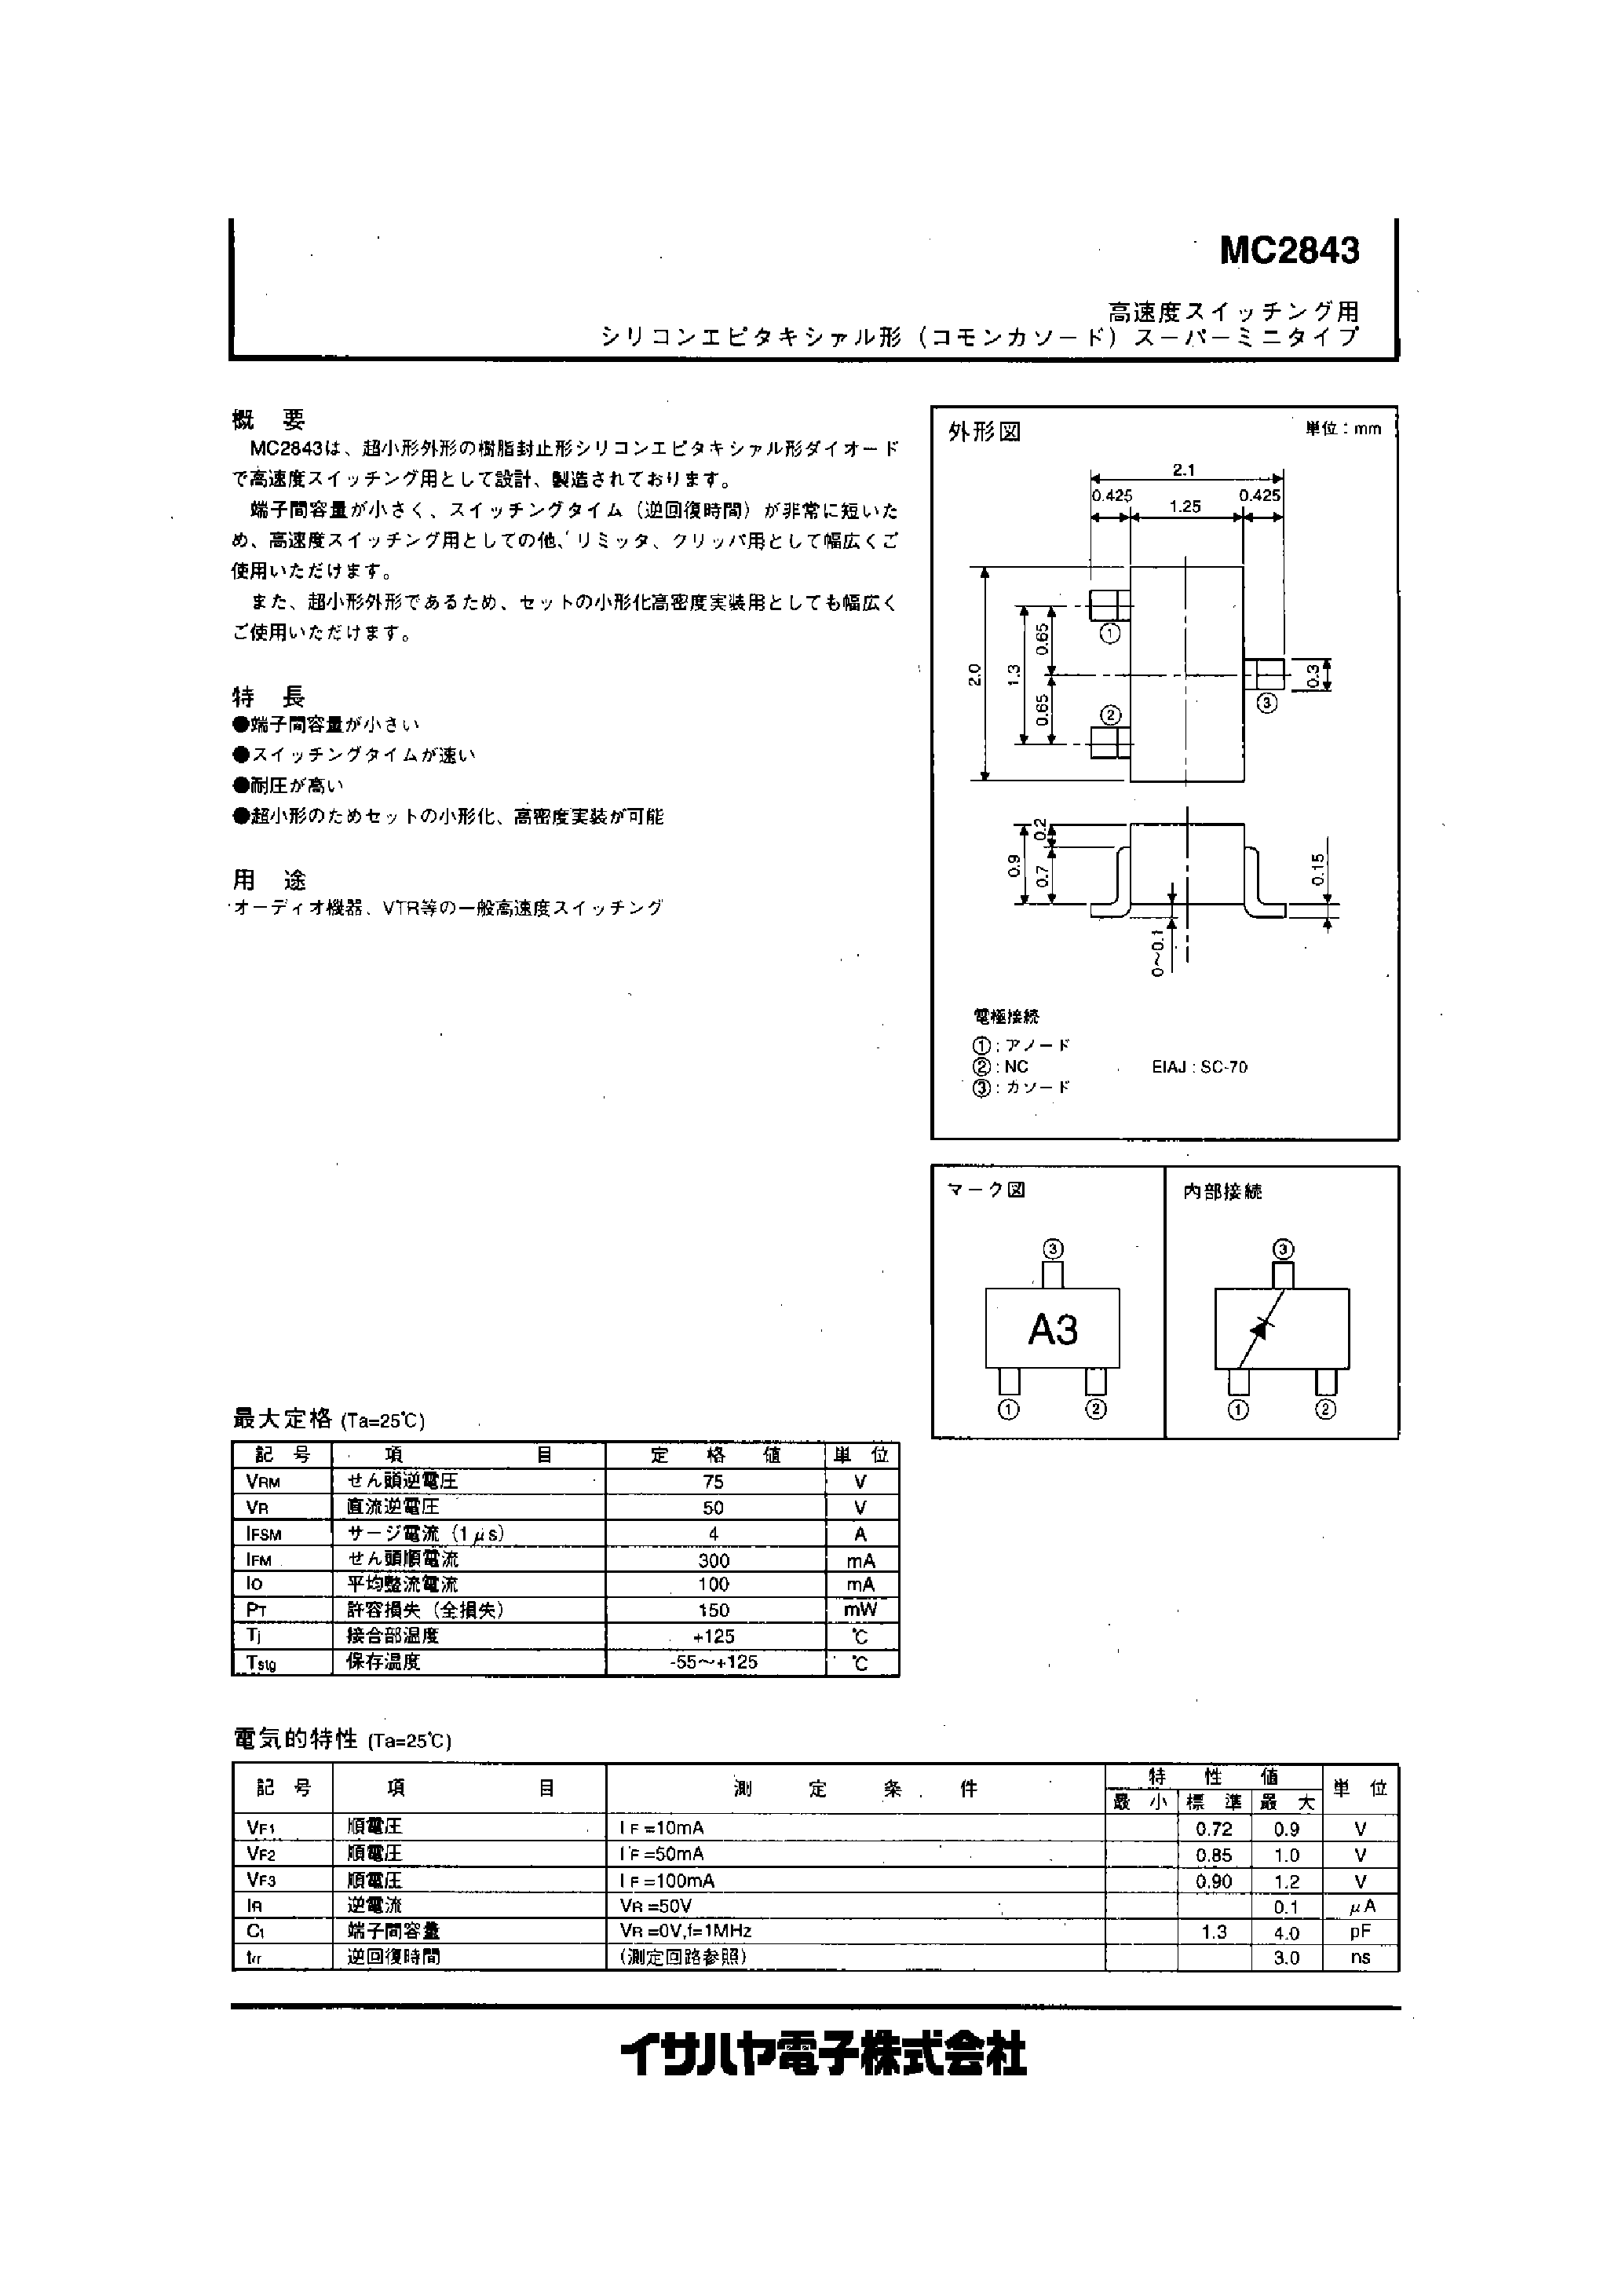 Datasheet MC2843 - MC2843 page 1